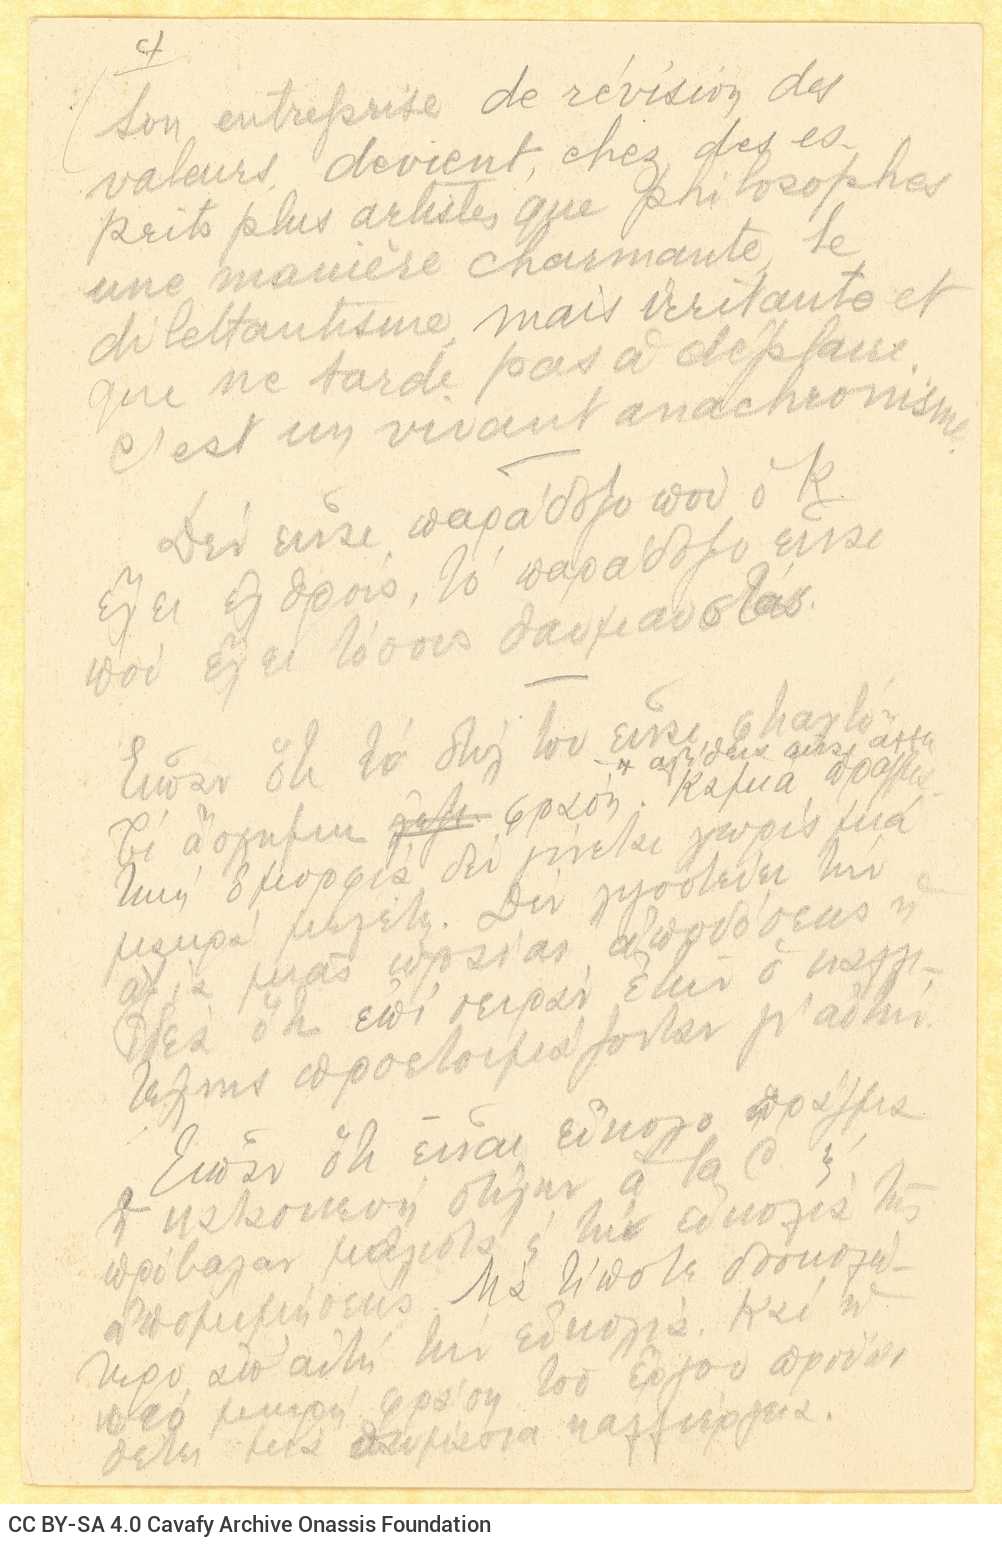 Χειρόγραφες σημειώσεις της Ρίκας Σεγκοπούλου σε επτά φύλλα και σε έ�